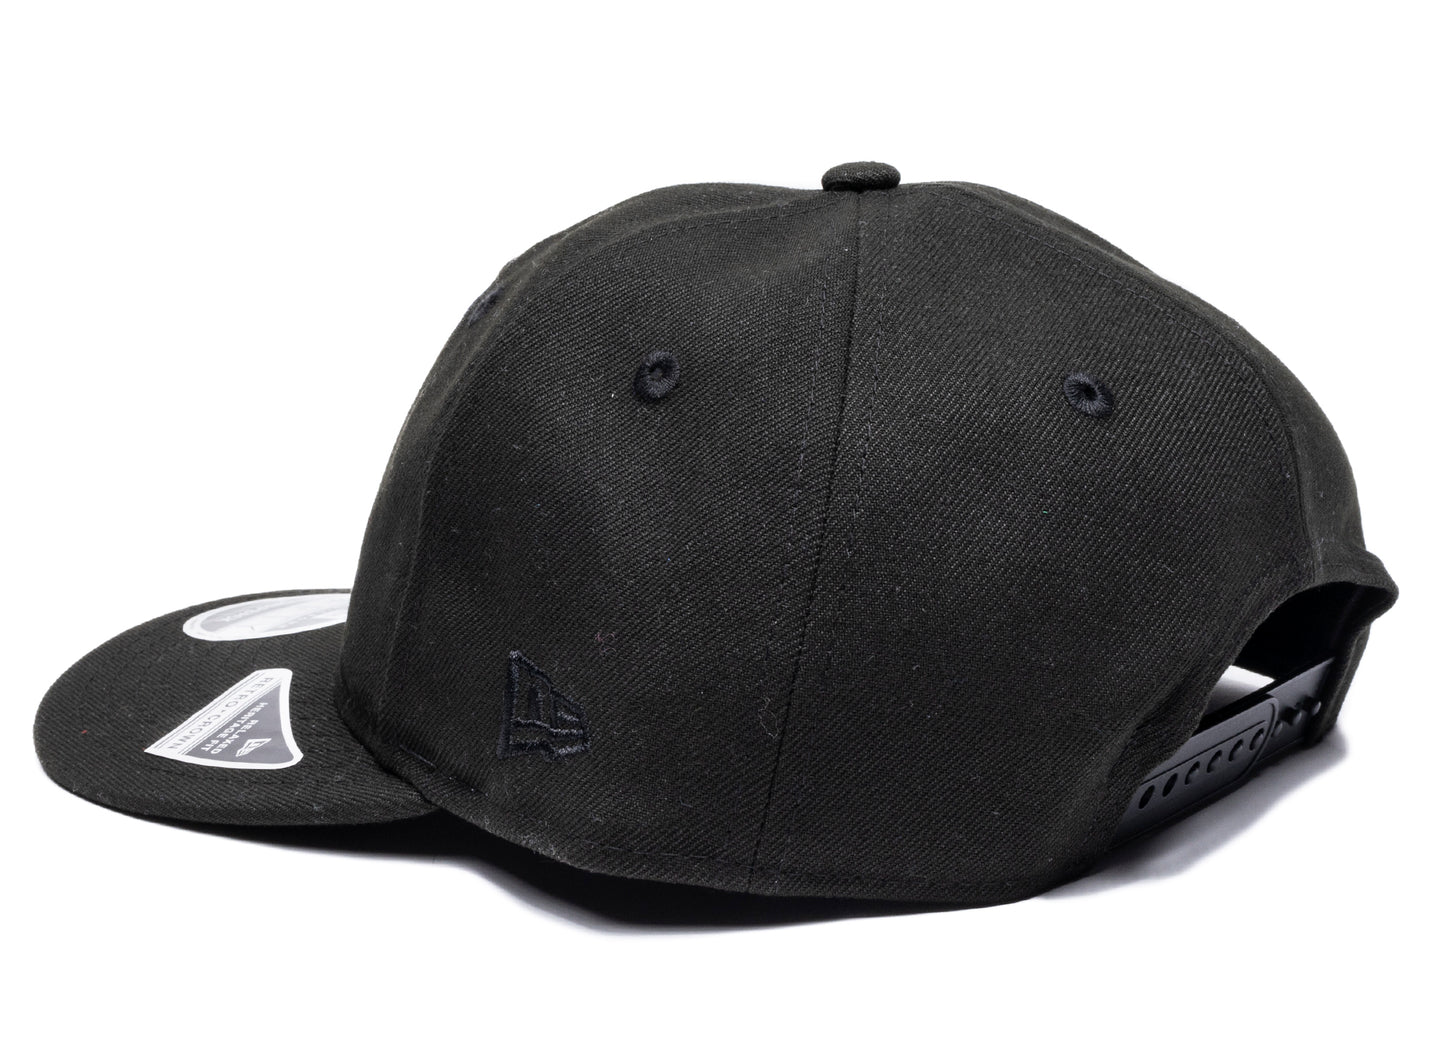 New Era RC950 Kentucky Snapback Hat 'Black' xld